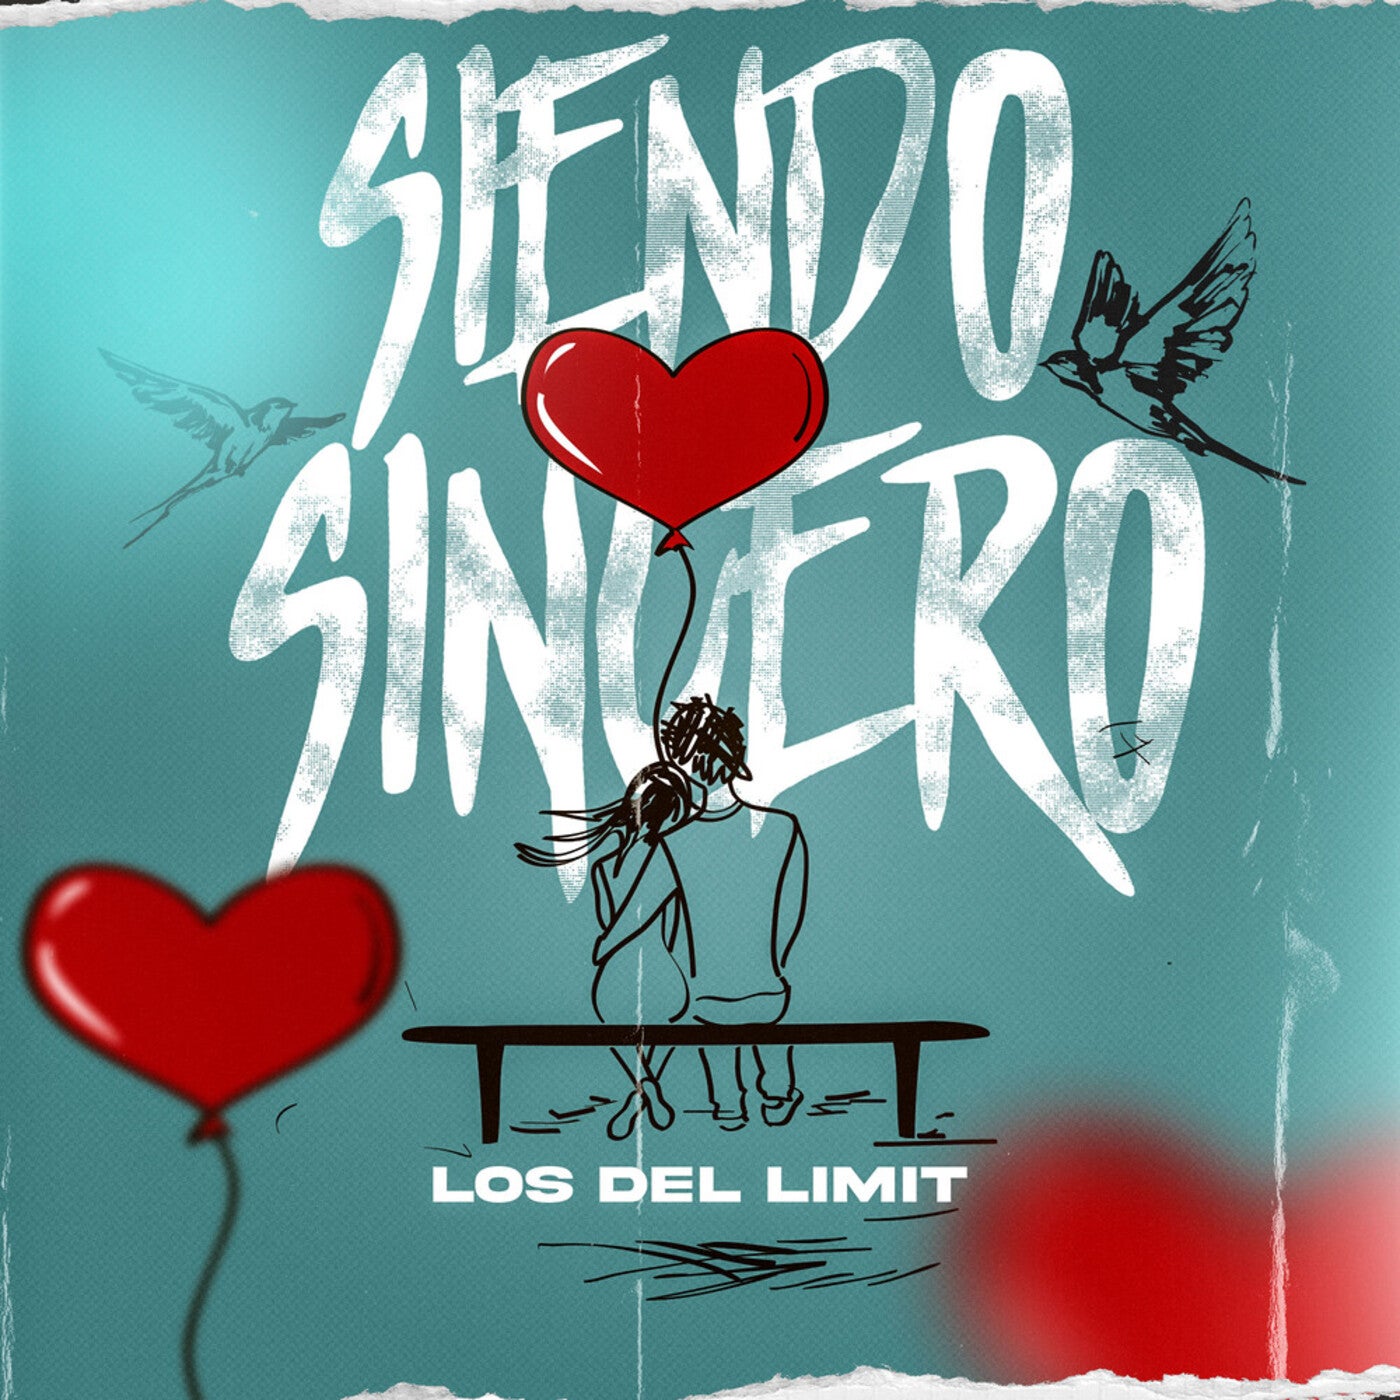 Siendo Sincero by Los Del Limit on Beatsource